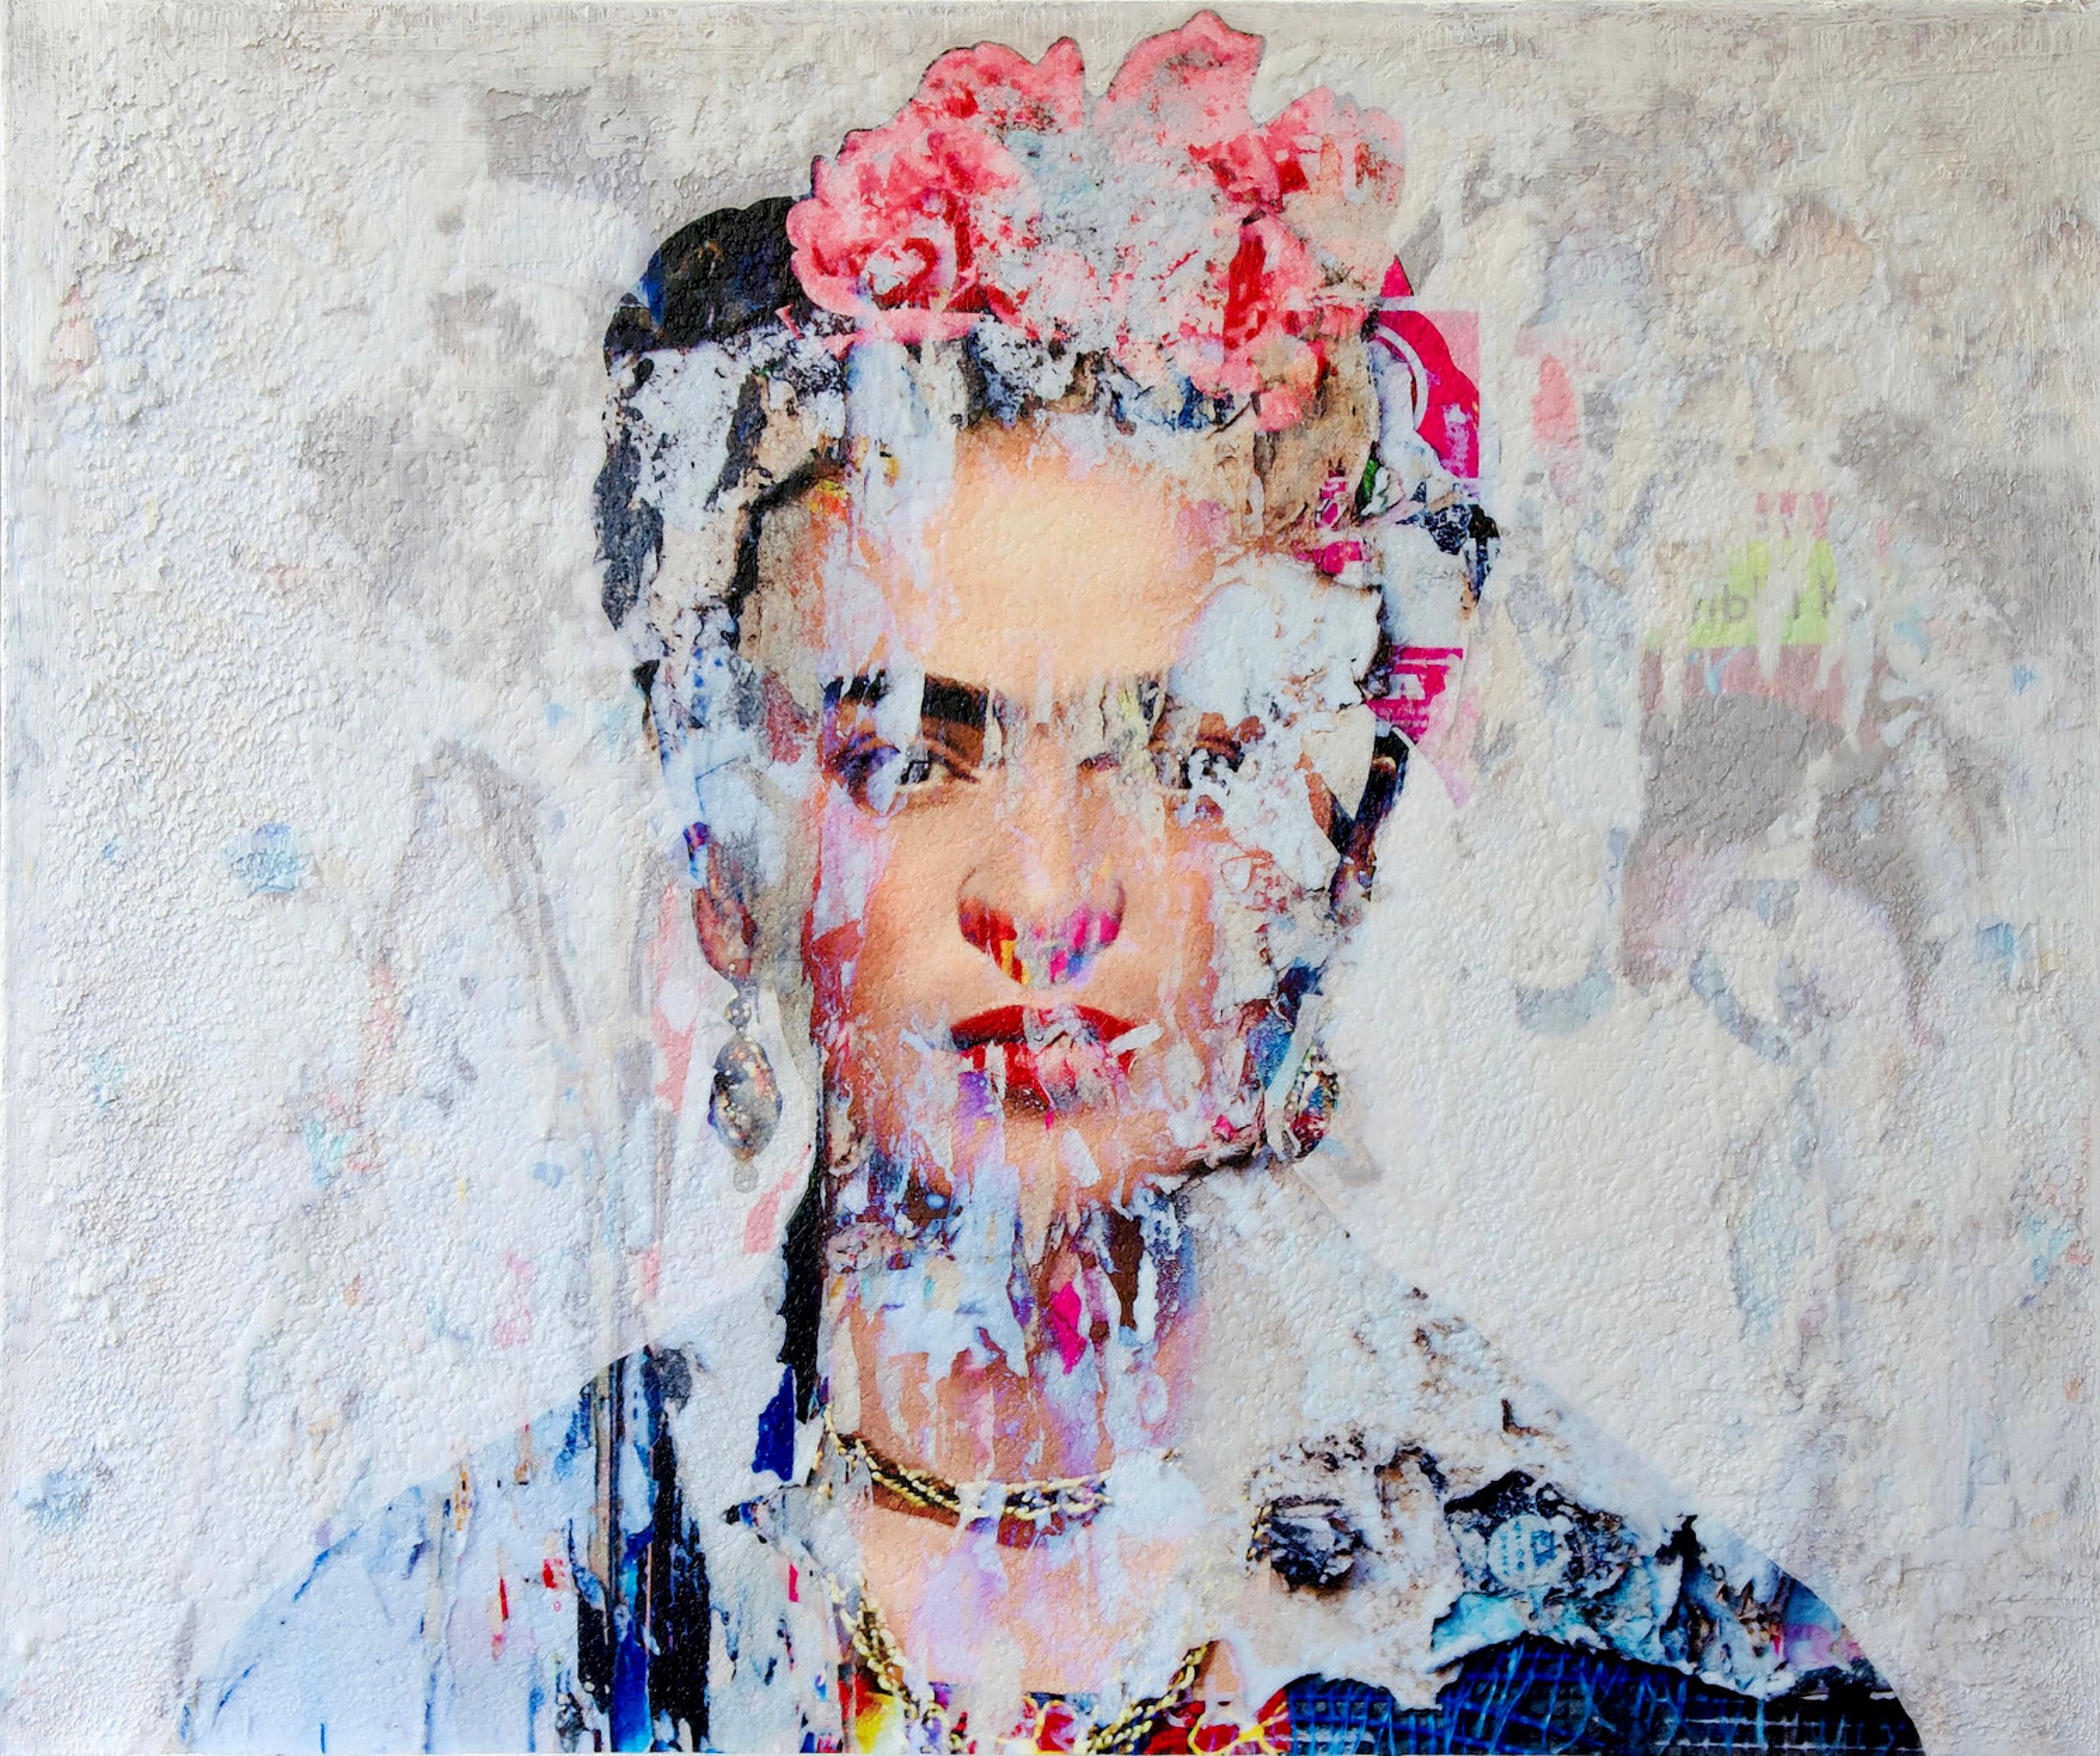 Karin Vermeer的 "Frida Kahlo "是对照片、绘画和拼贴画的数字组合和处理，成为新的彩色原创艺术作品。